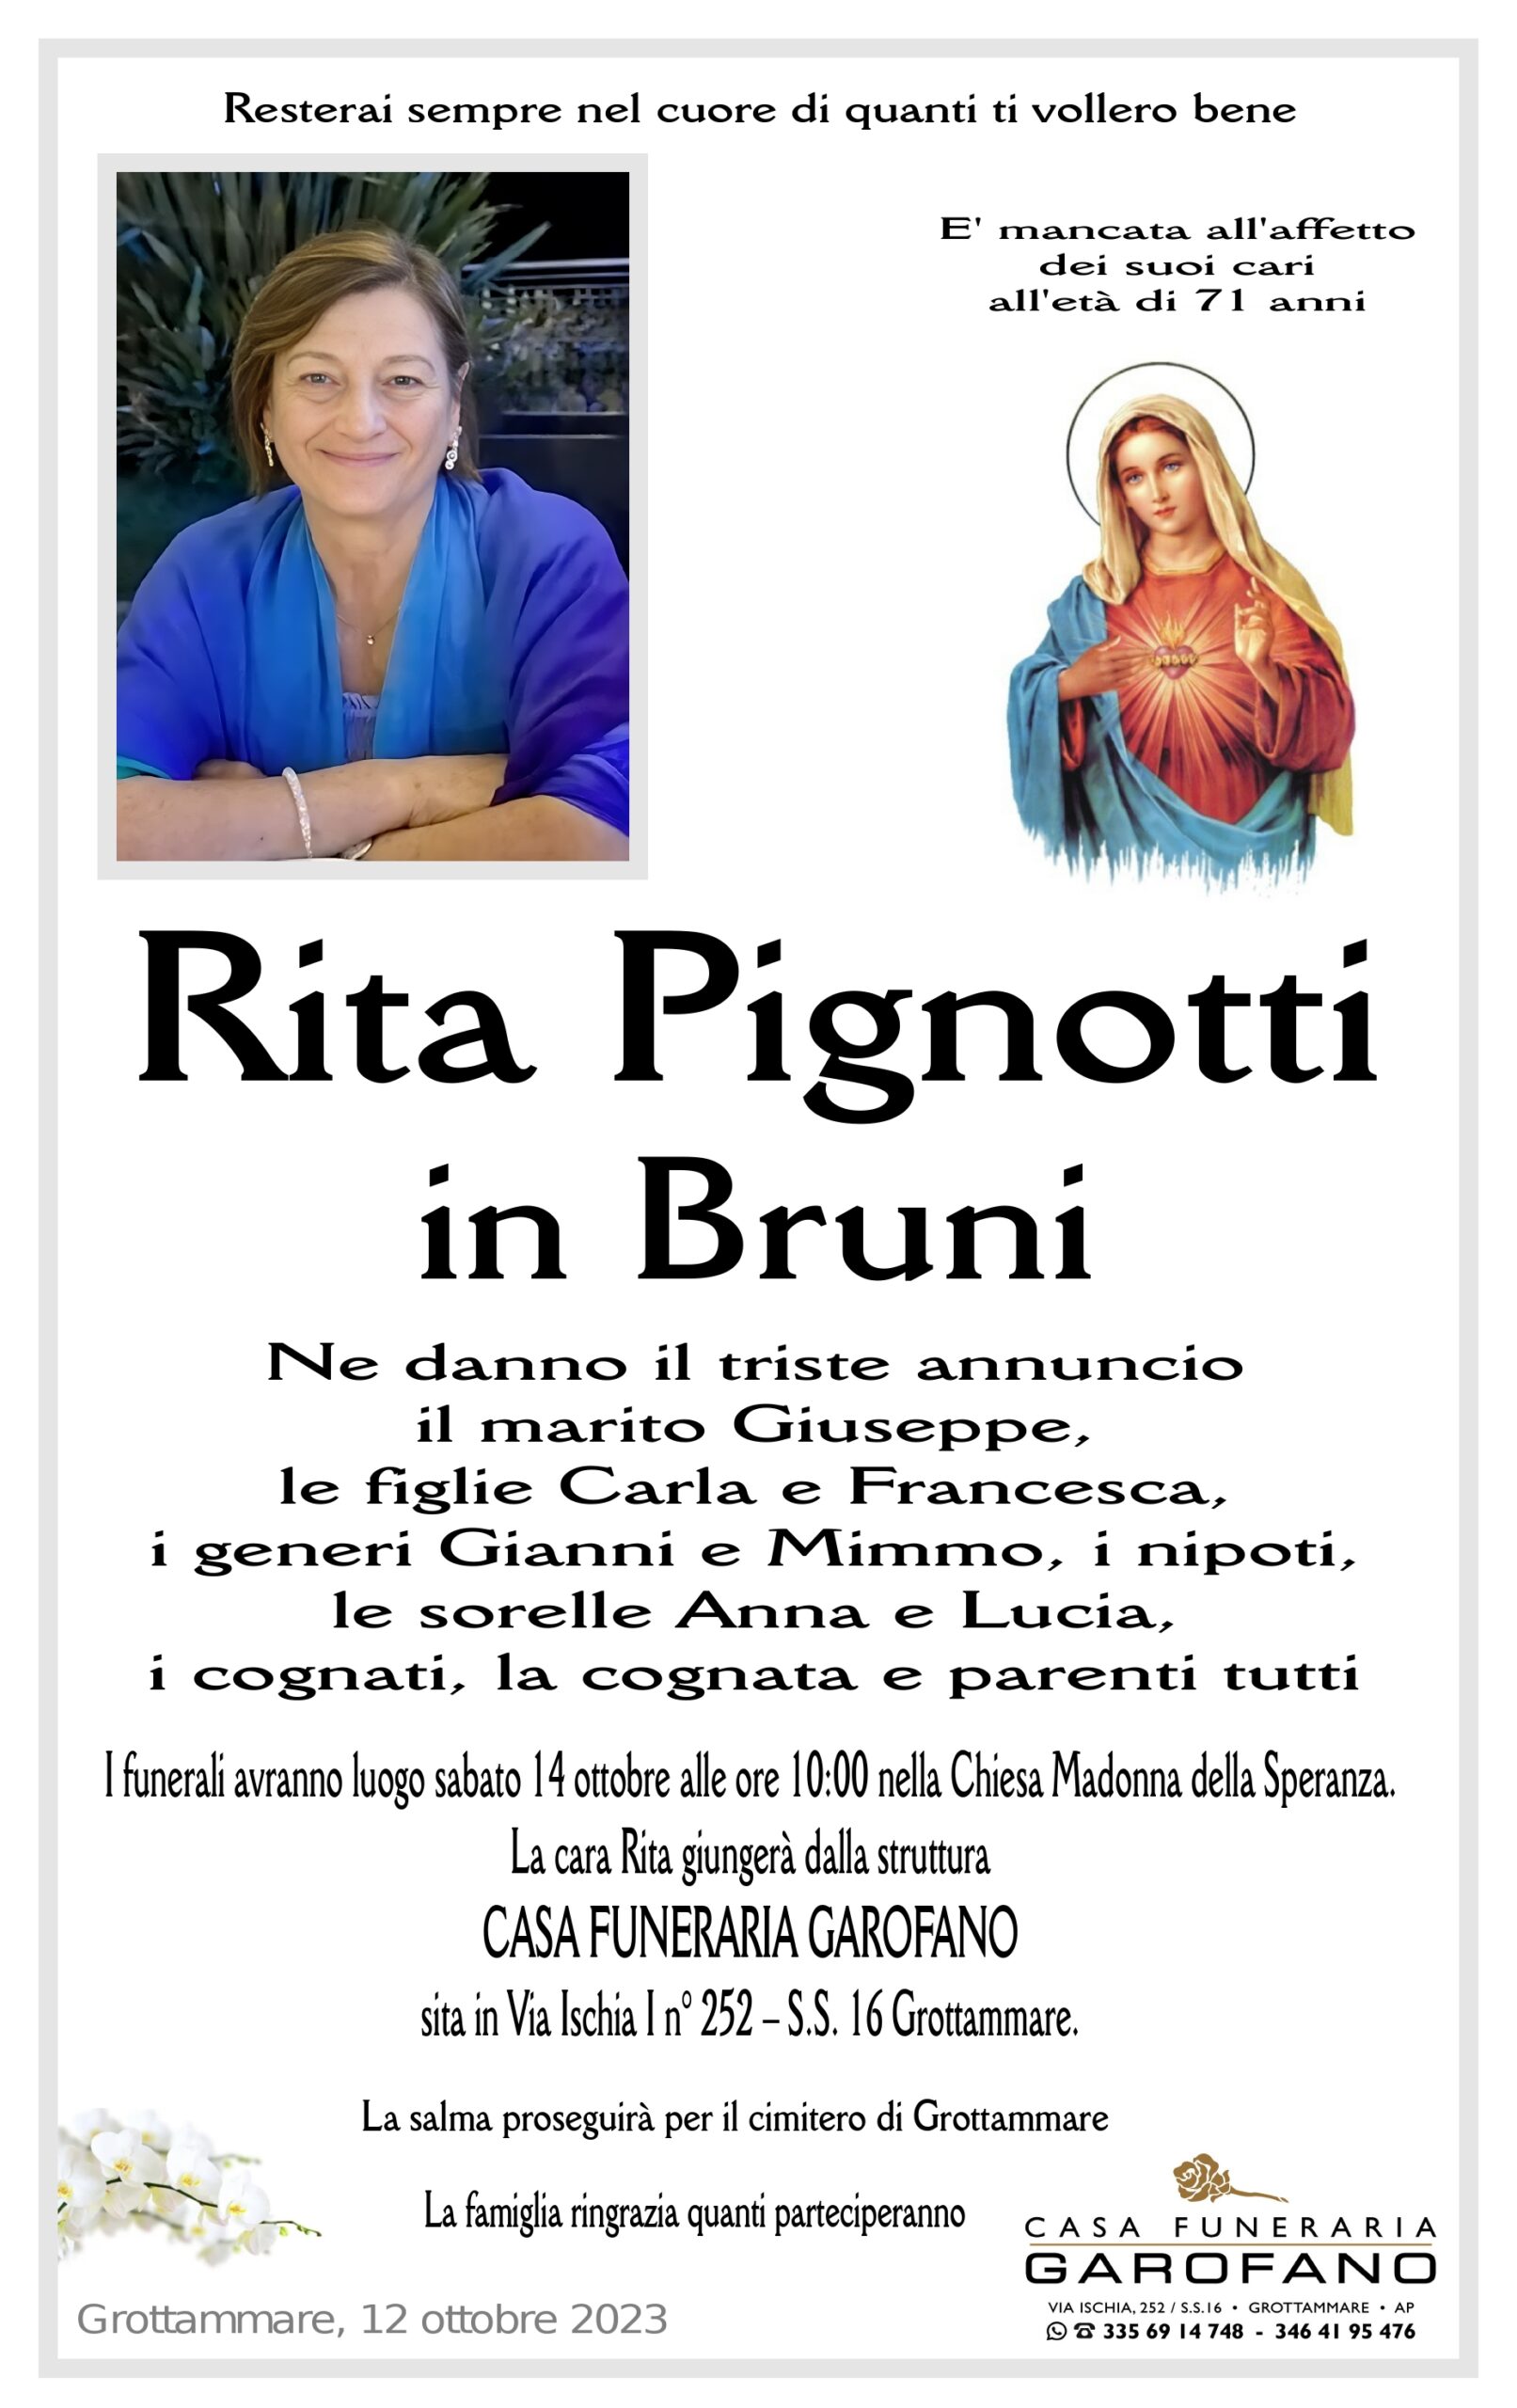 Rita Pignotti